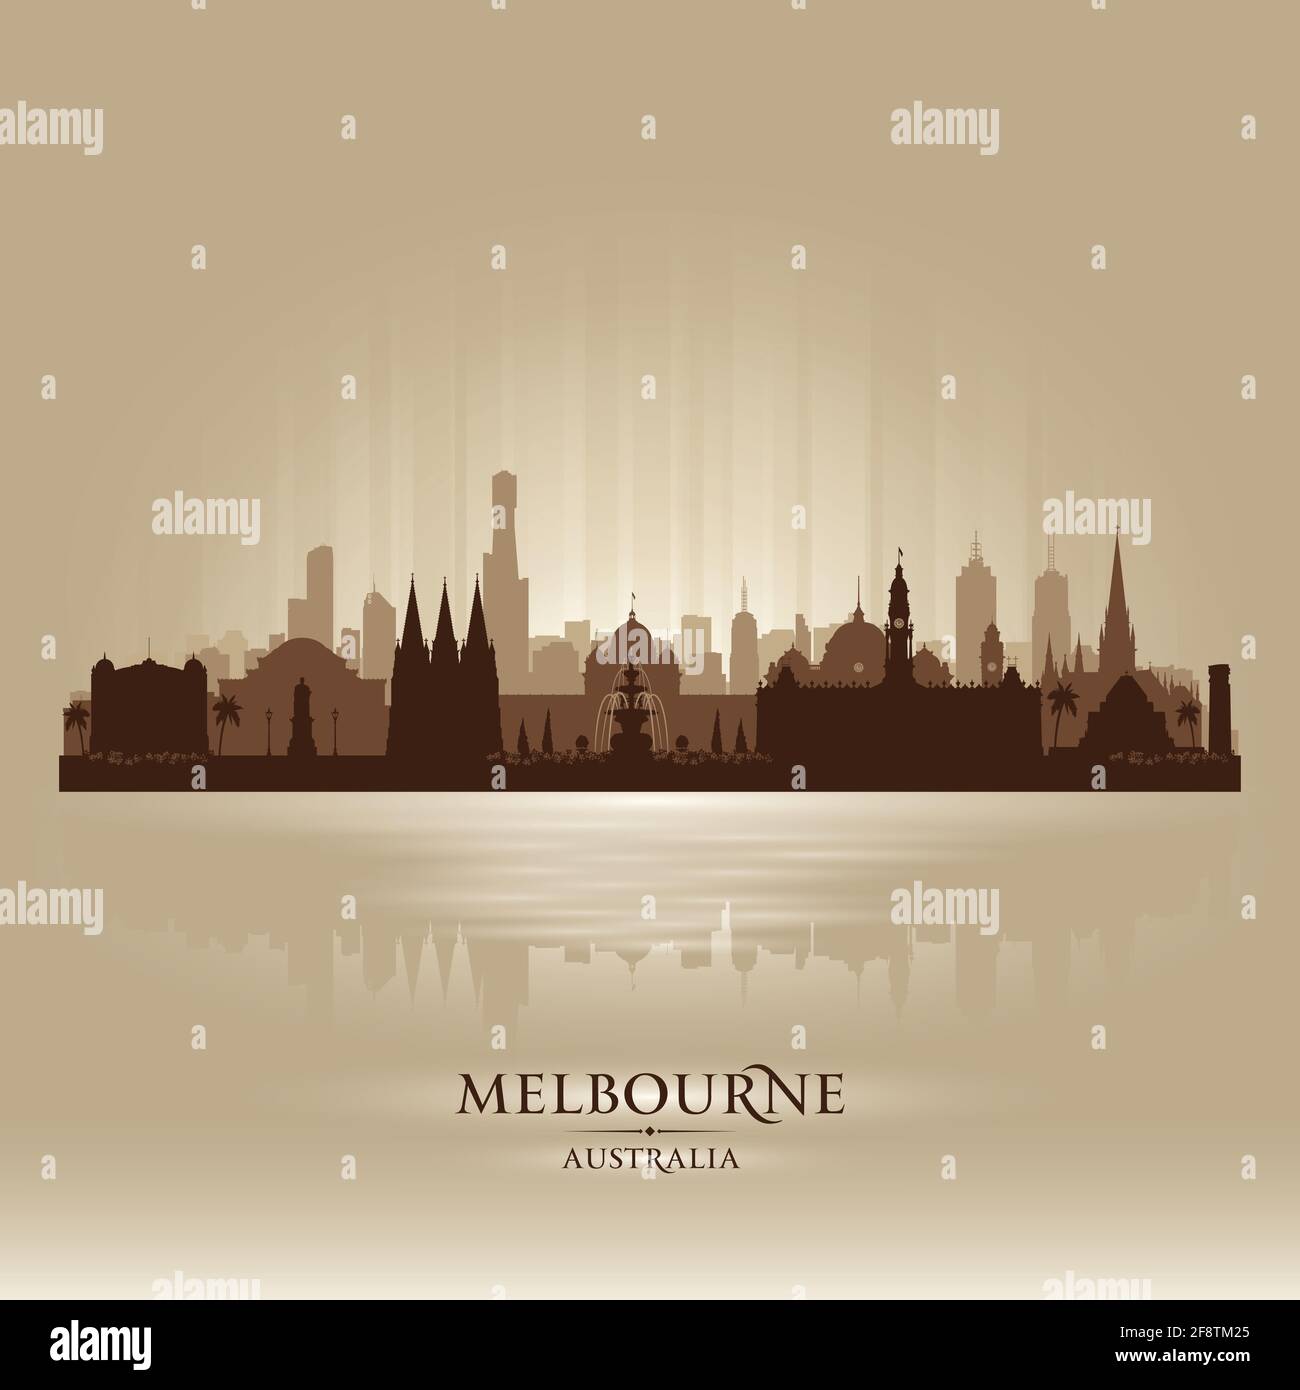 Abbildung der Skyline von Melbourne Australia mit Vektor-Silhouette Stock Vektor